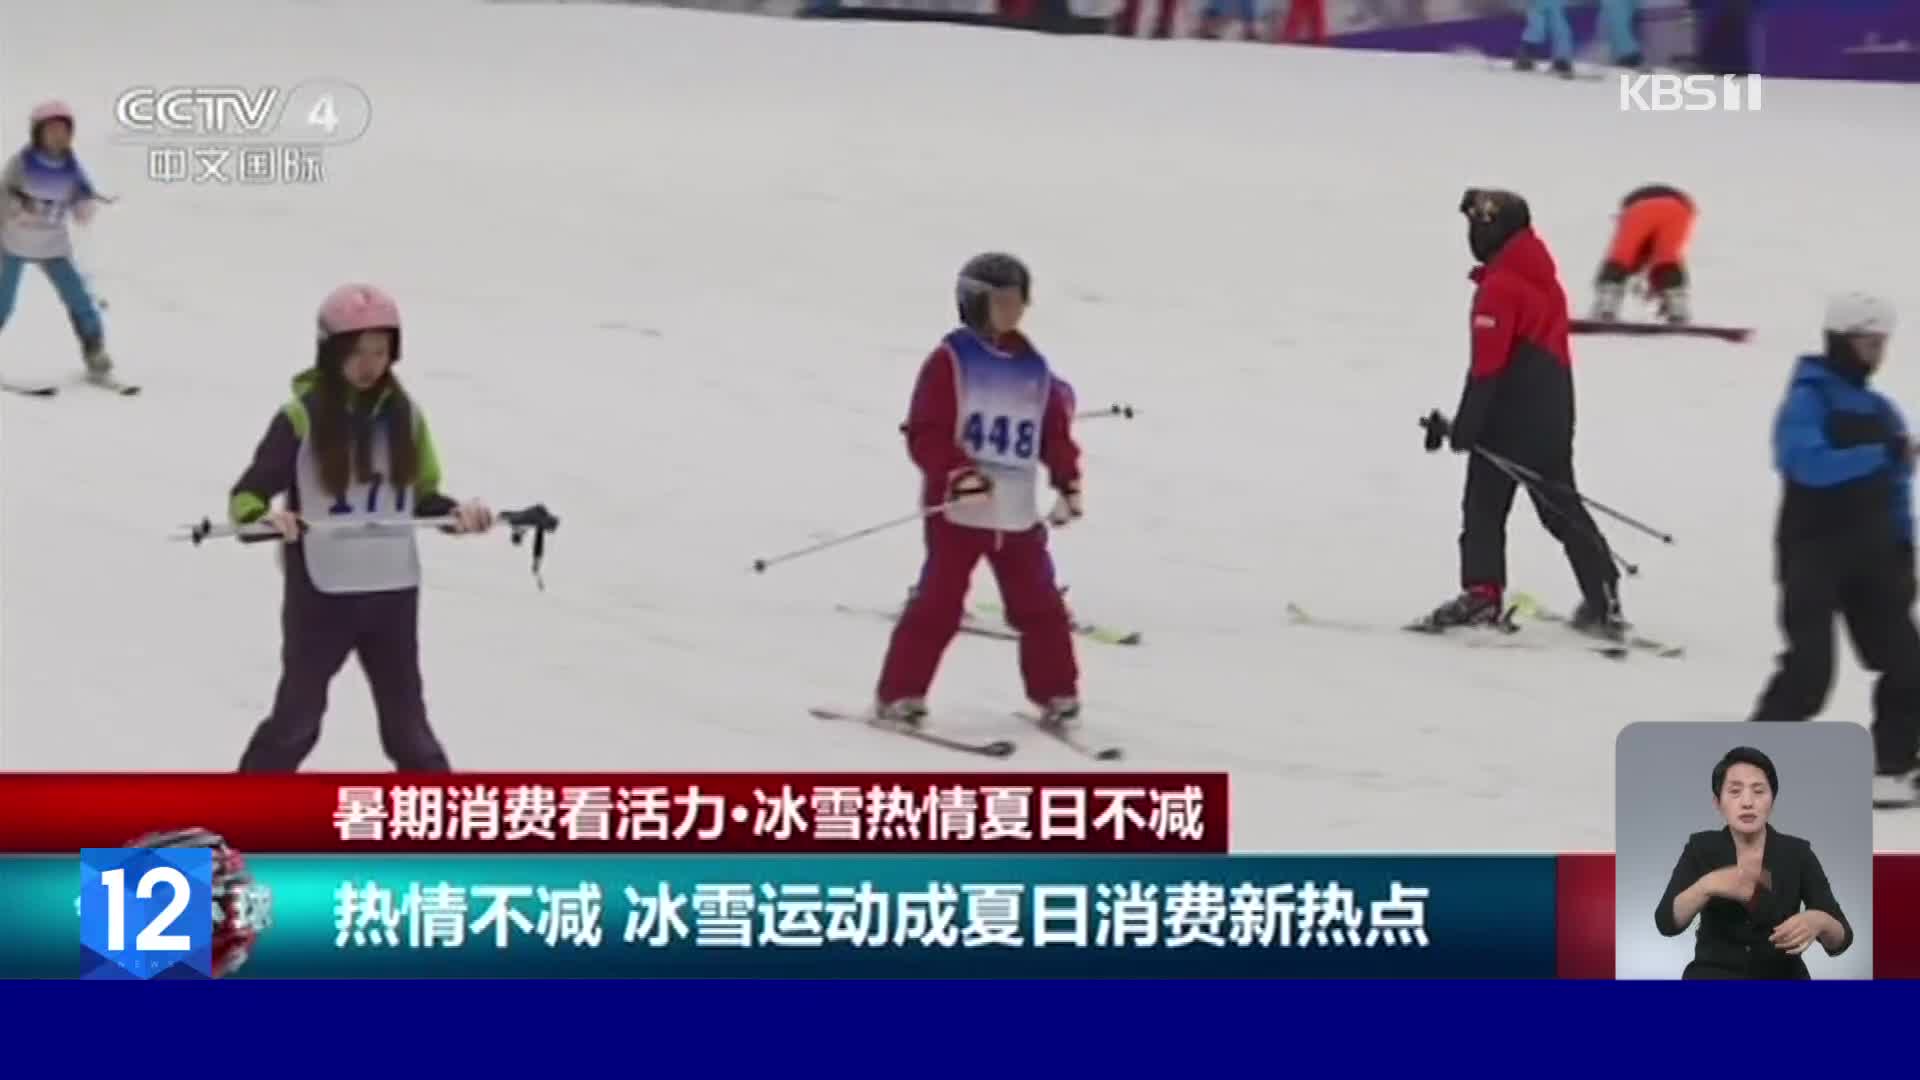 중국, 폭염 속 겨울 스포츠 인기